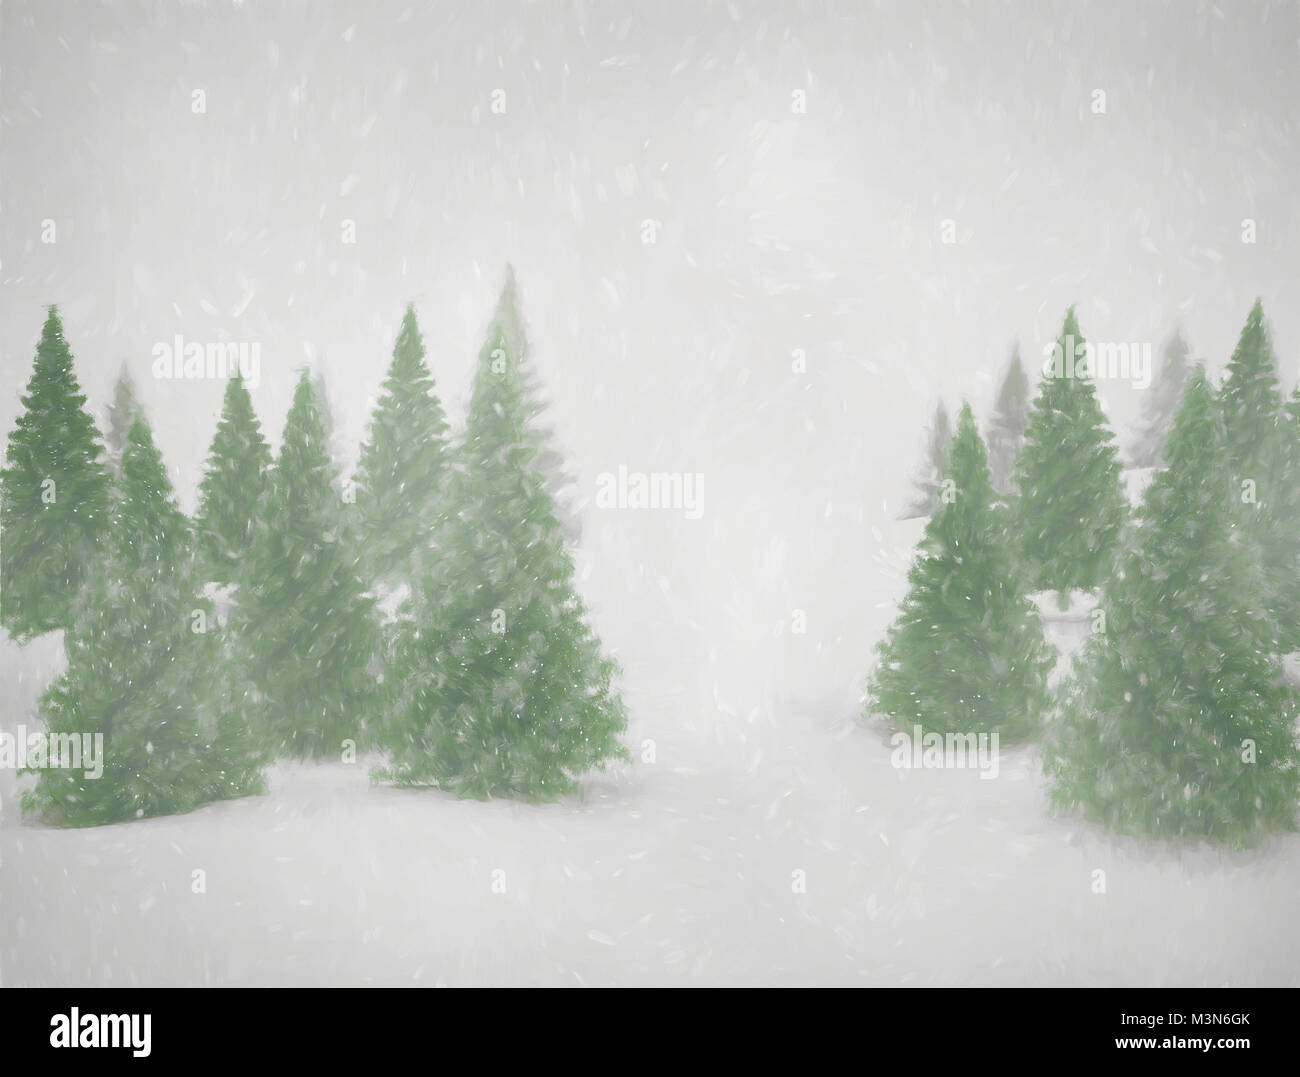 Gemälde von grünen Pinien und Schnee Stockfoto